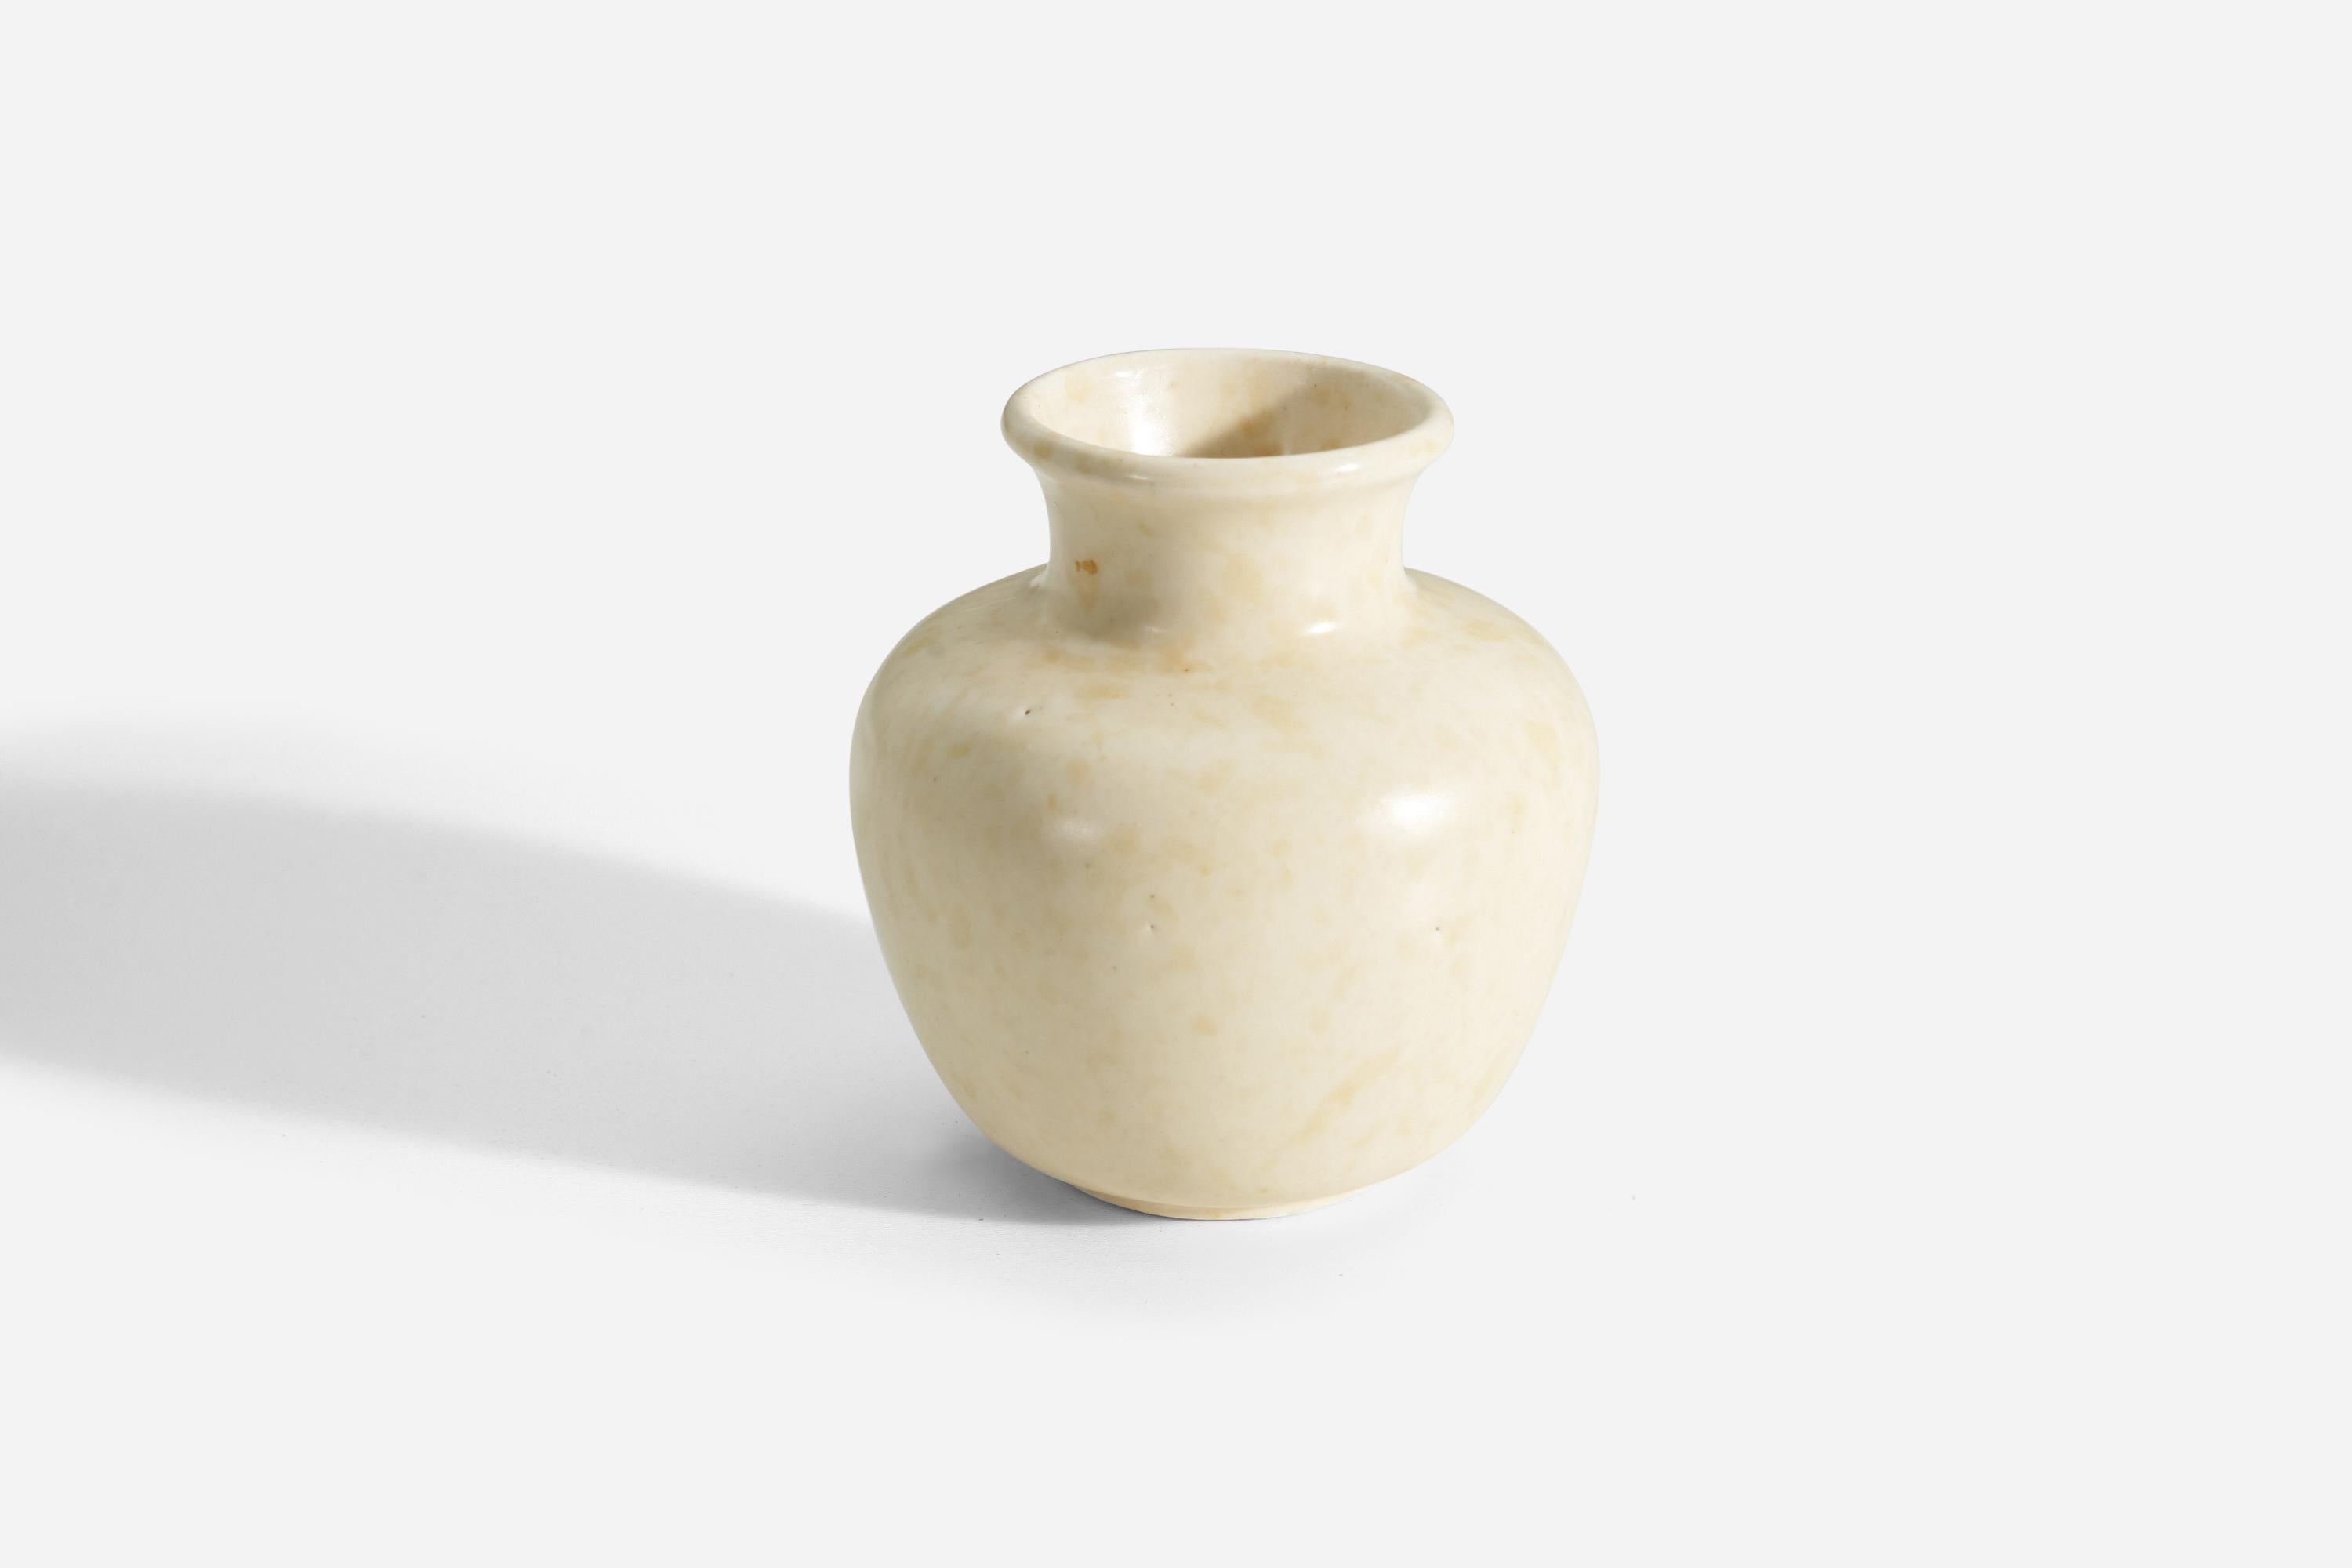 Vase aus weiß/beige glasiertem Steingut, entworfen und hergestellt von Upsala Ekeby, Schweden, ca. 1930-1940er Jahre.